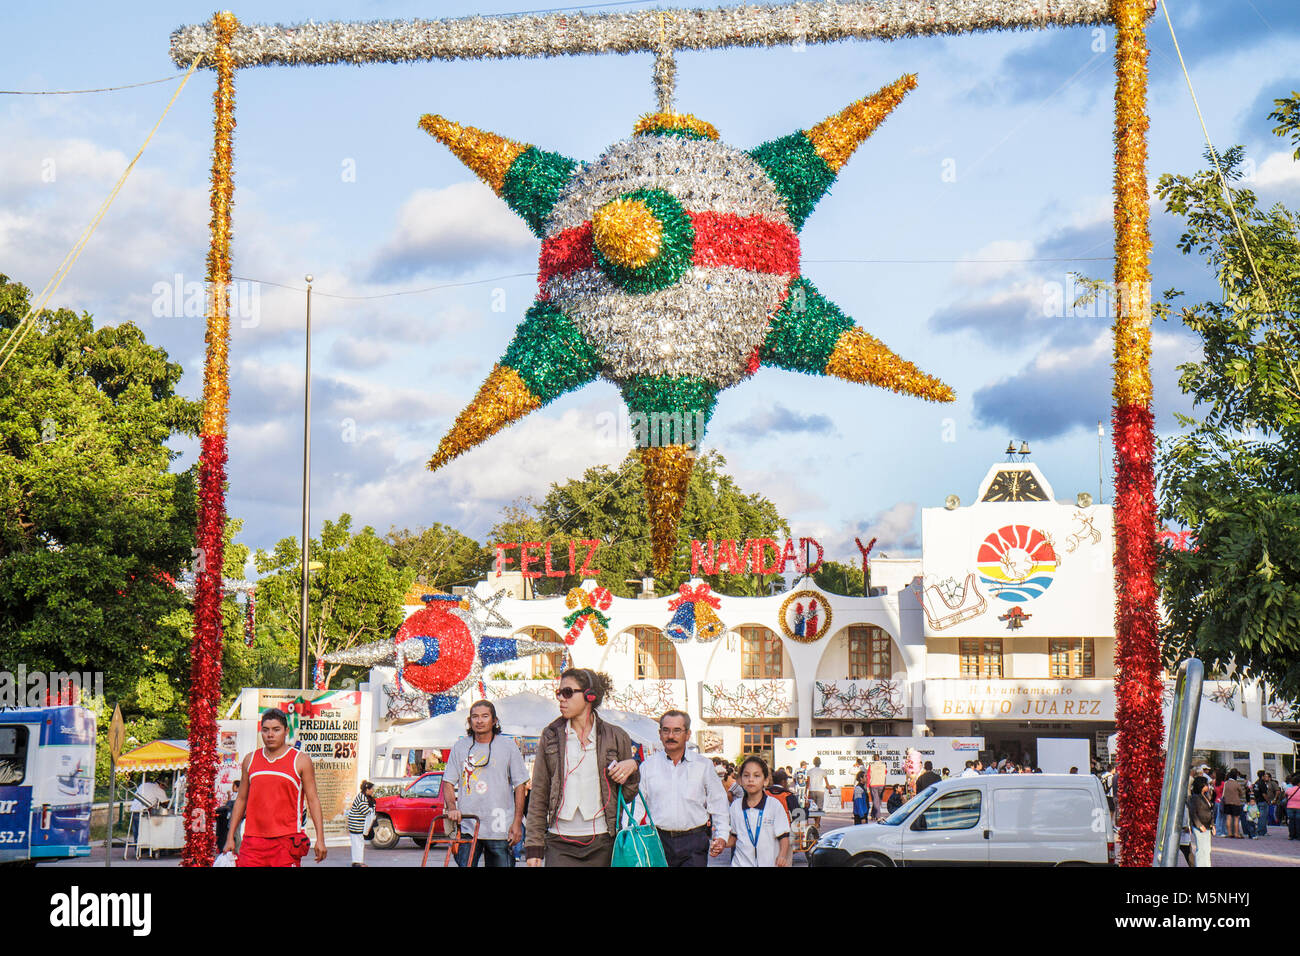 Cancun Mexiko, Mexikanisch, Avenida Tulum, Palacio Municipal, Rathaus, Gebäude, Weihnachten hispanischer Mann Männer männlich, Frau weibliche Frauen, riesige piñata, lokale Traditions Stockfoto